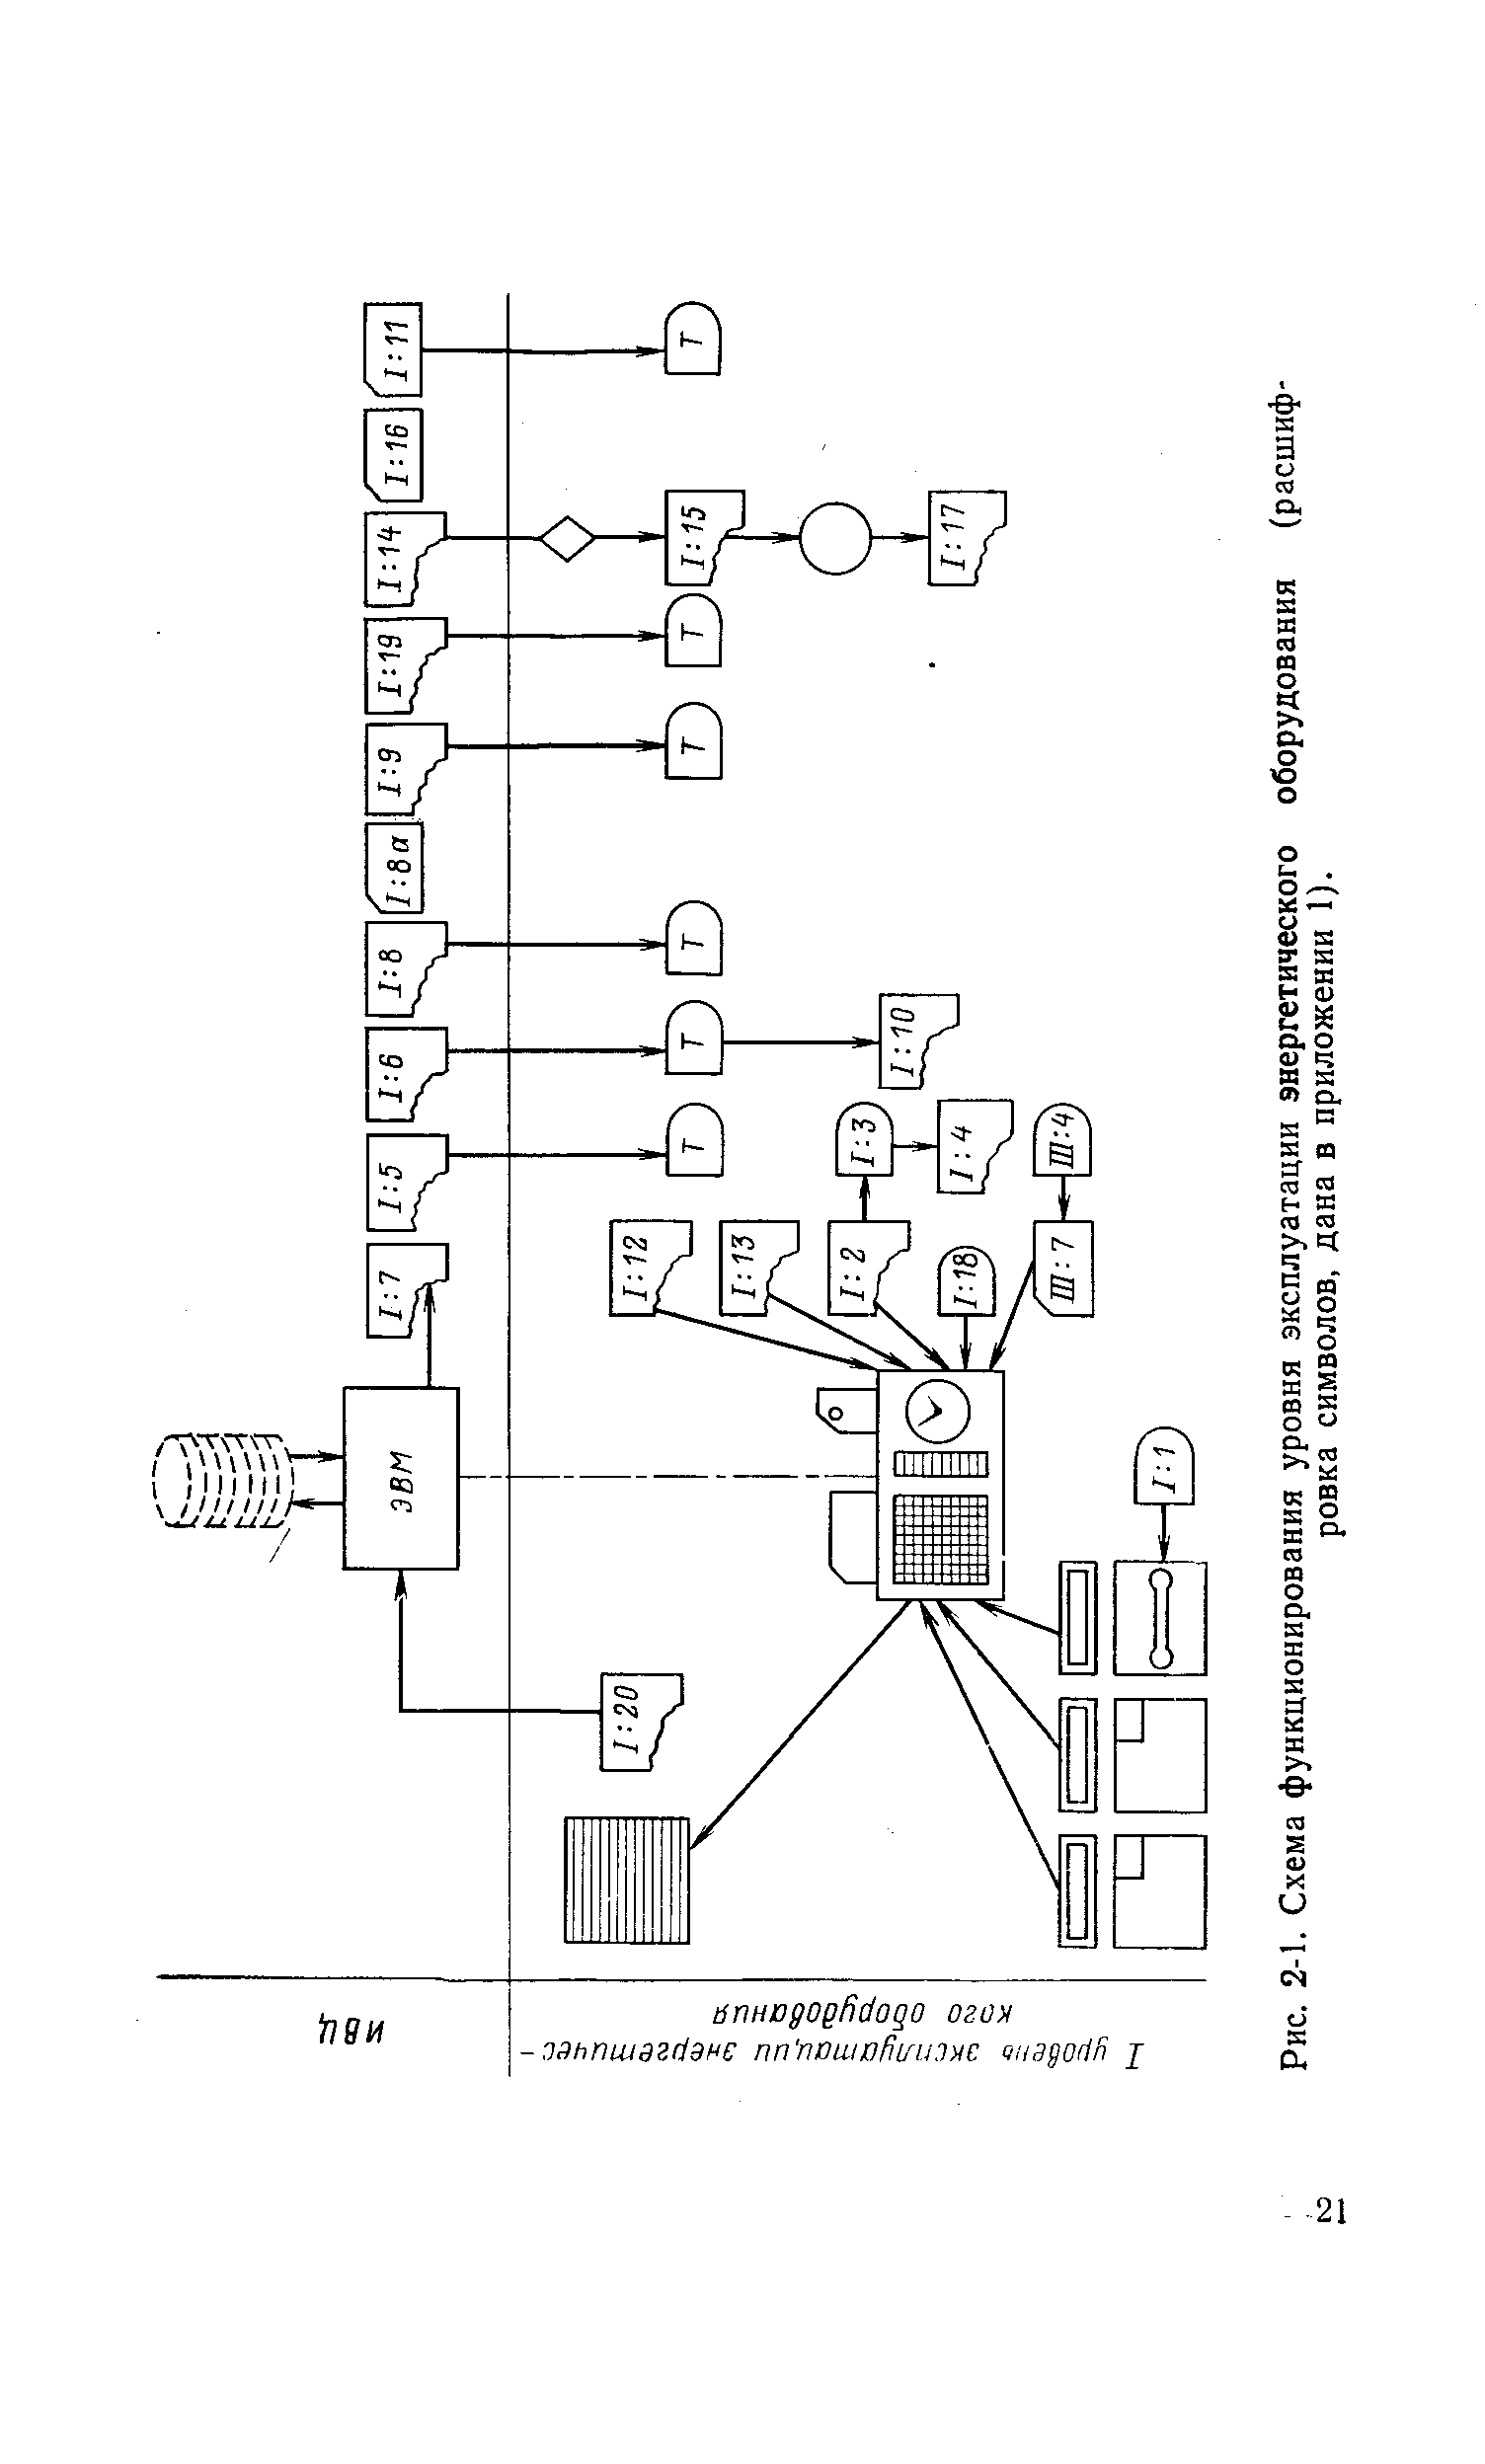 Рис. 2-1. Схема функционирования уровня эксплуатации энергетического оборудования (расшифровка символов, дана в приложении 1).
